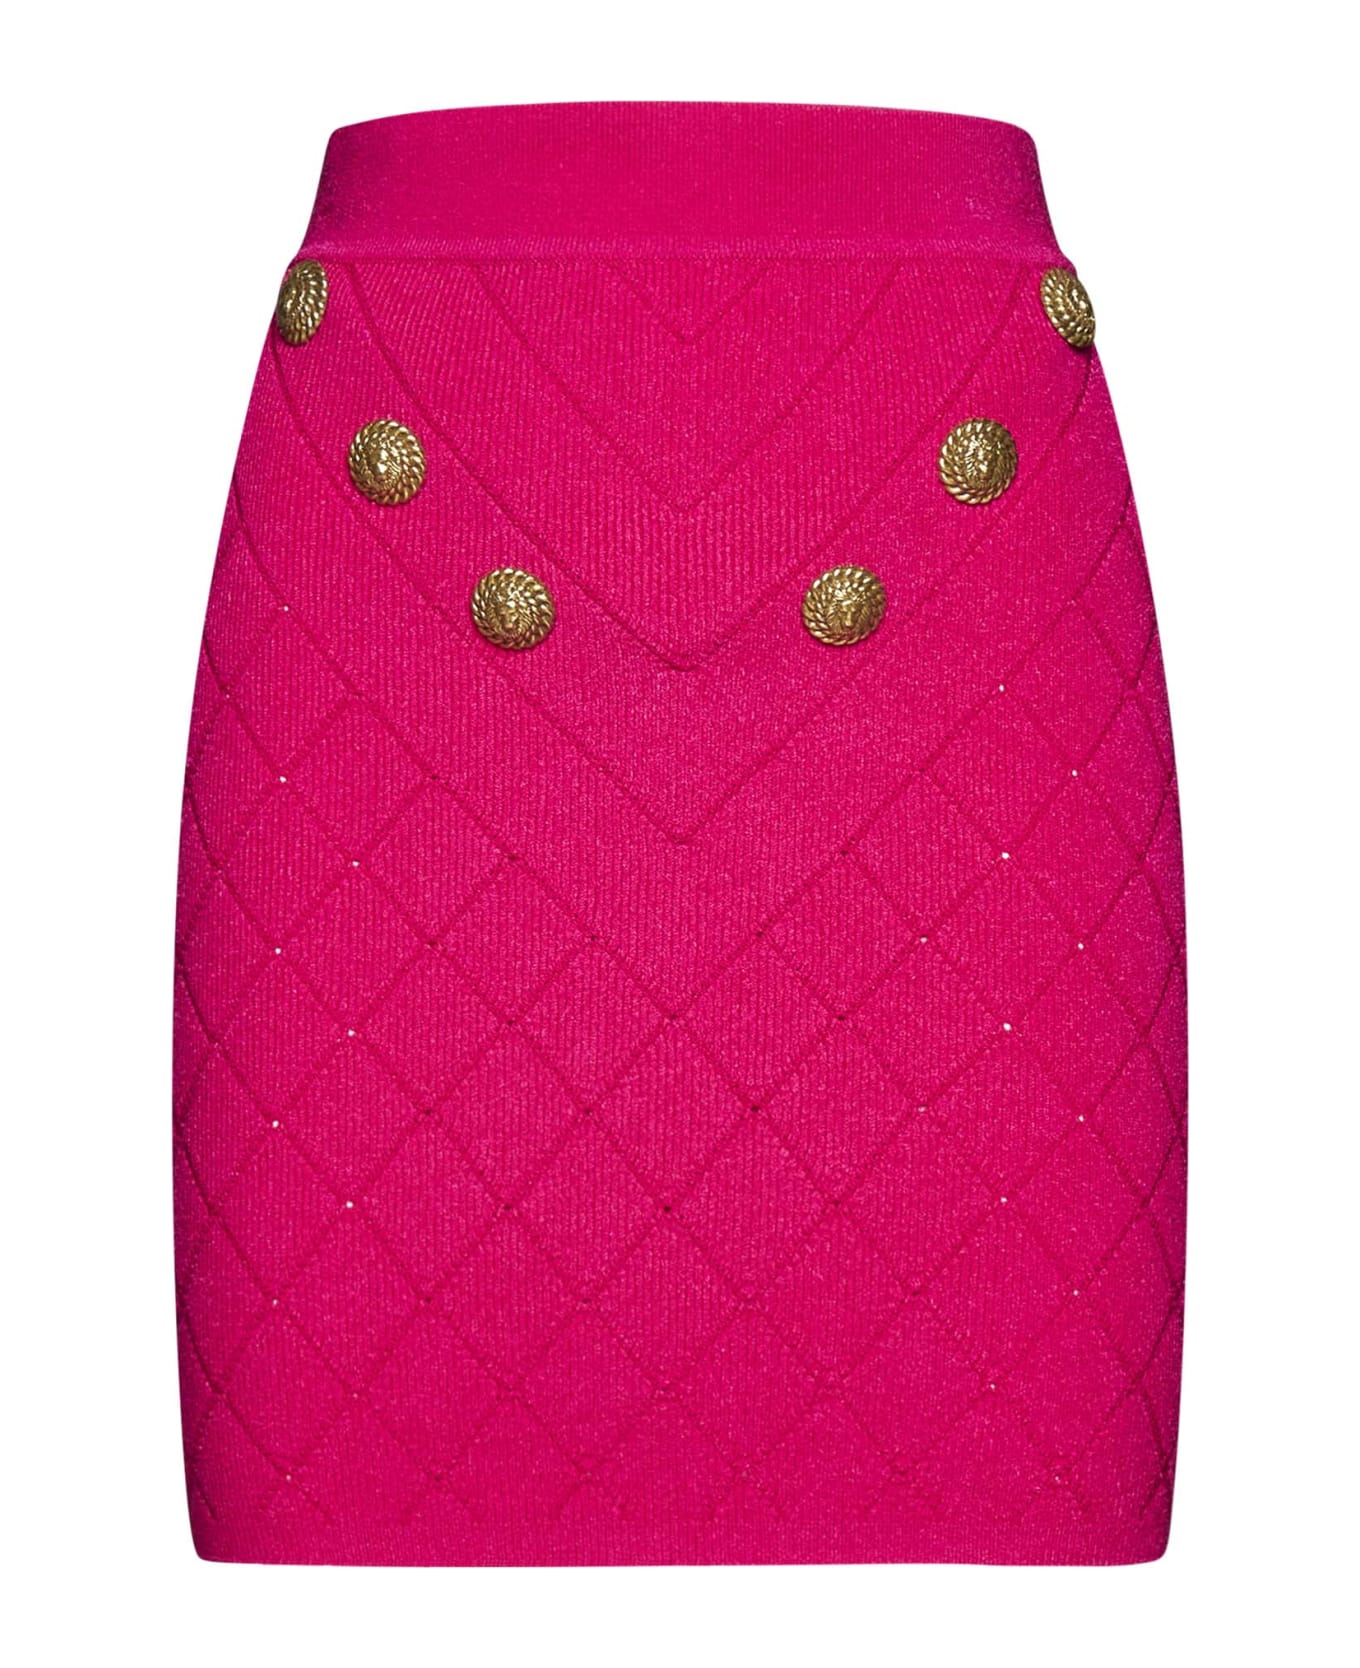 Balmain 6-button Knit Skirt - Pink